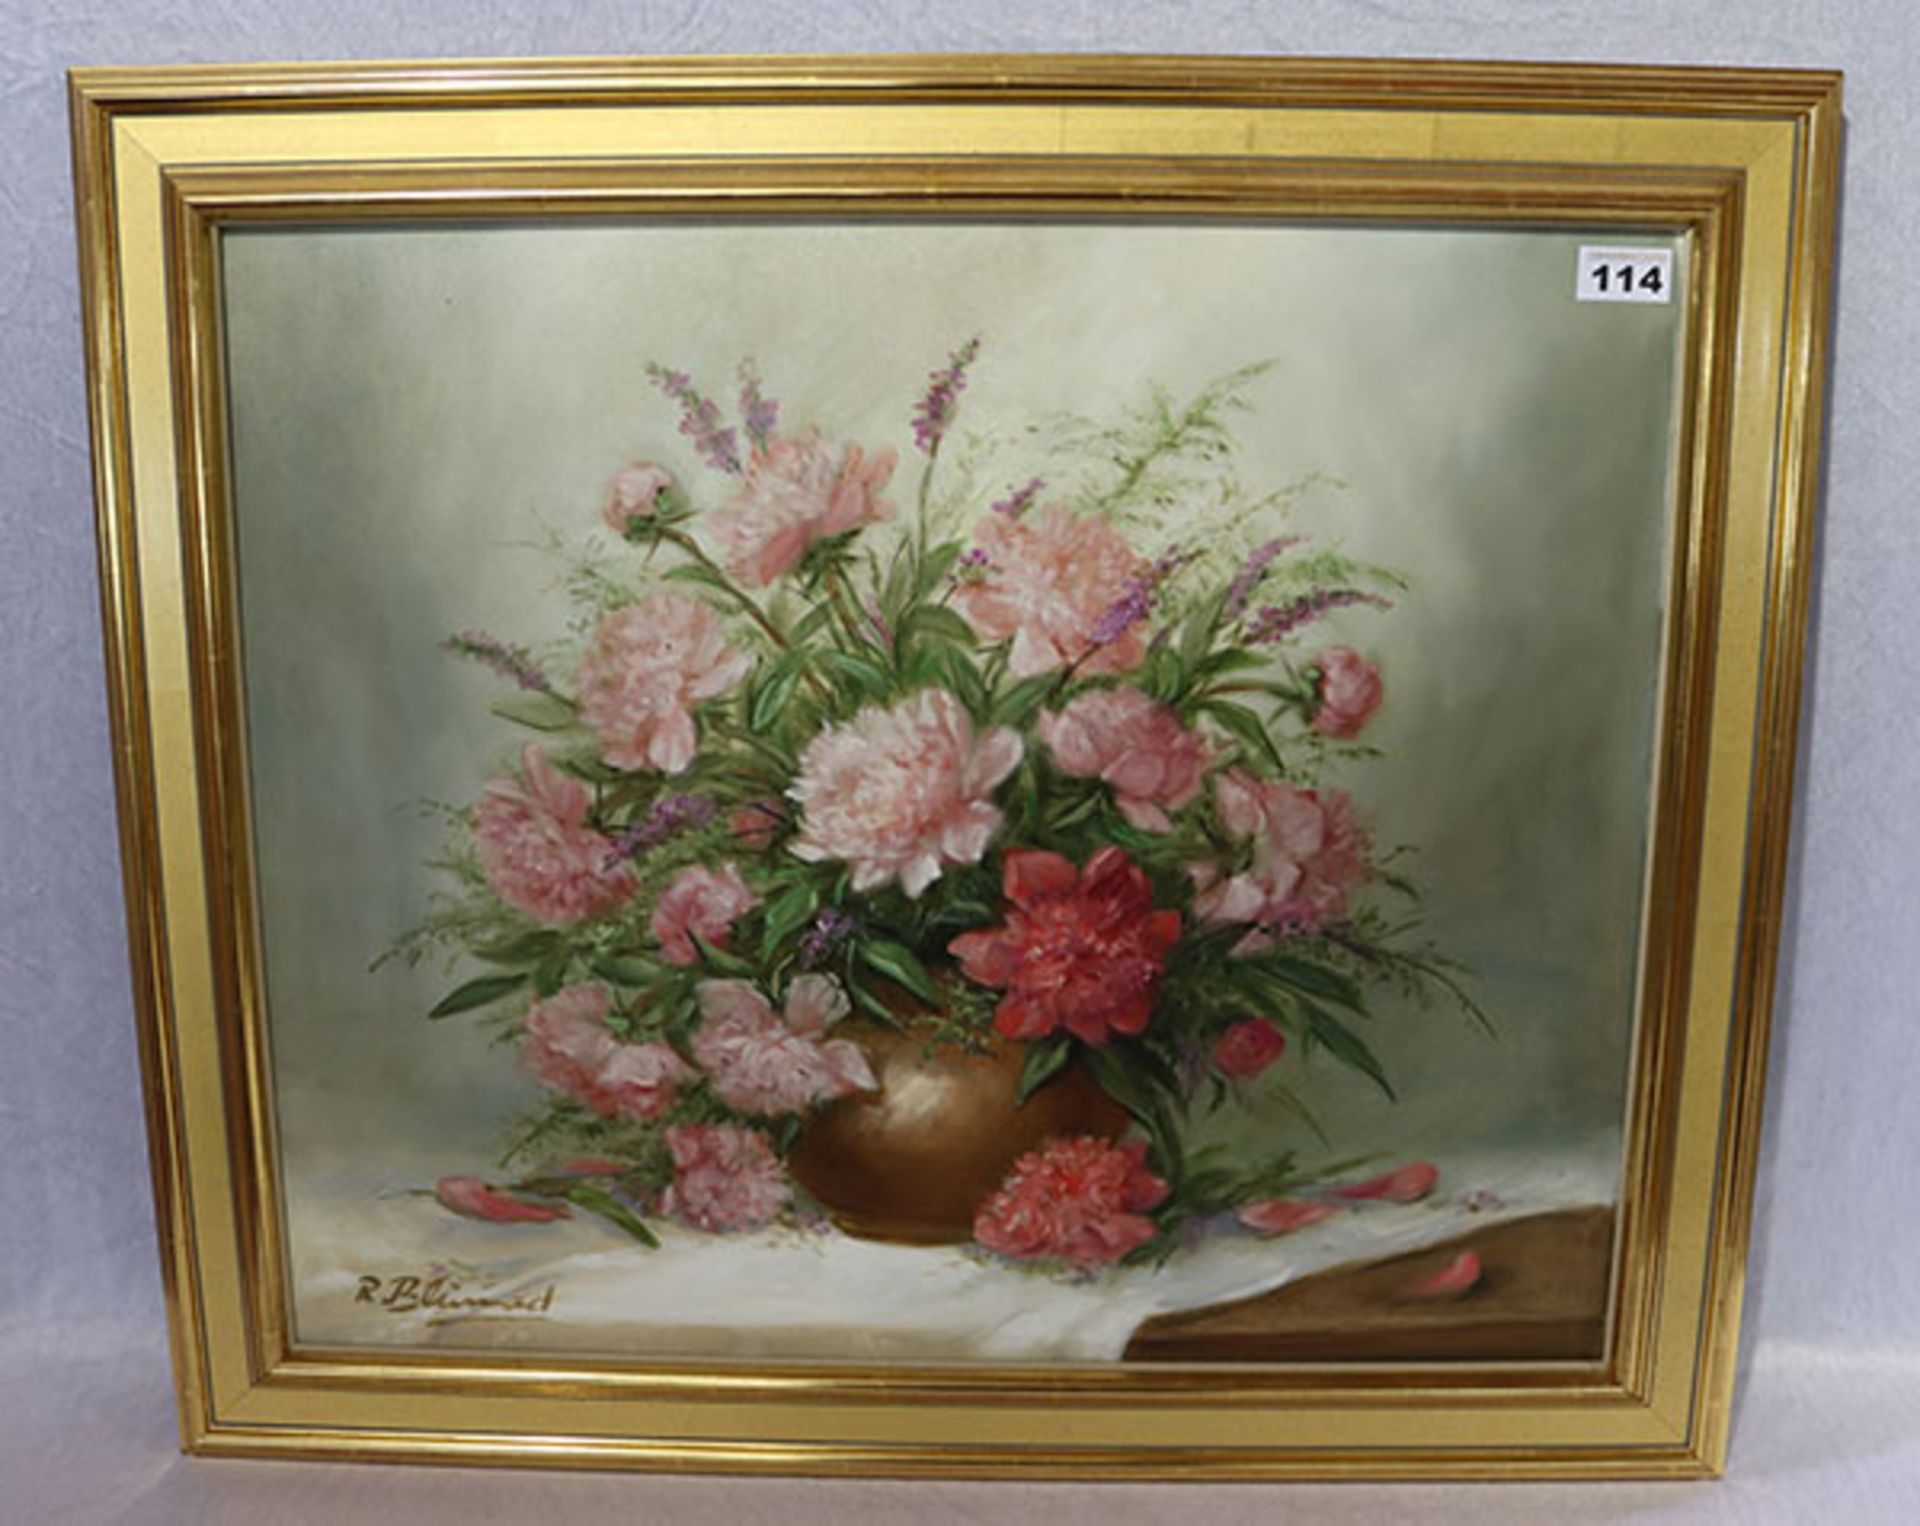 Gemälde ÖL/LW 'Blumenstrauß in Vase', signiert R. Blumand, Rose Blumand (geleg. auch Blumad), * 1930